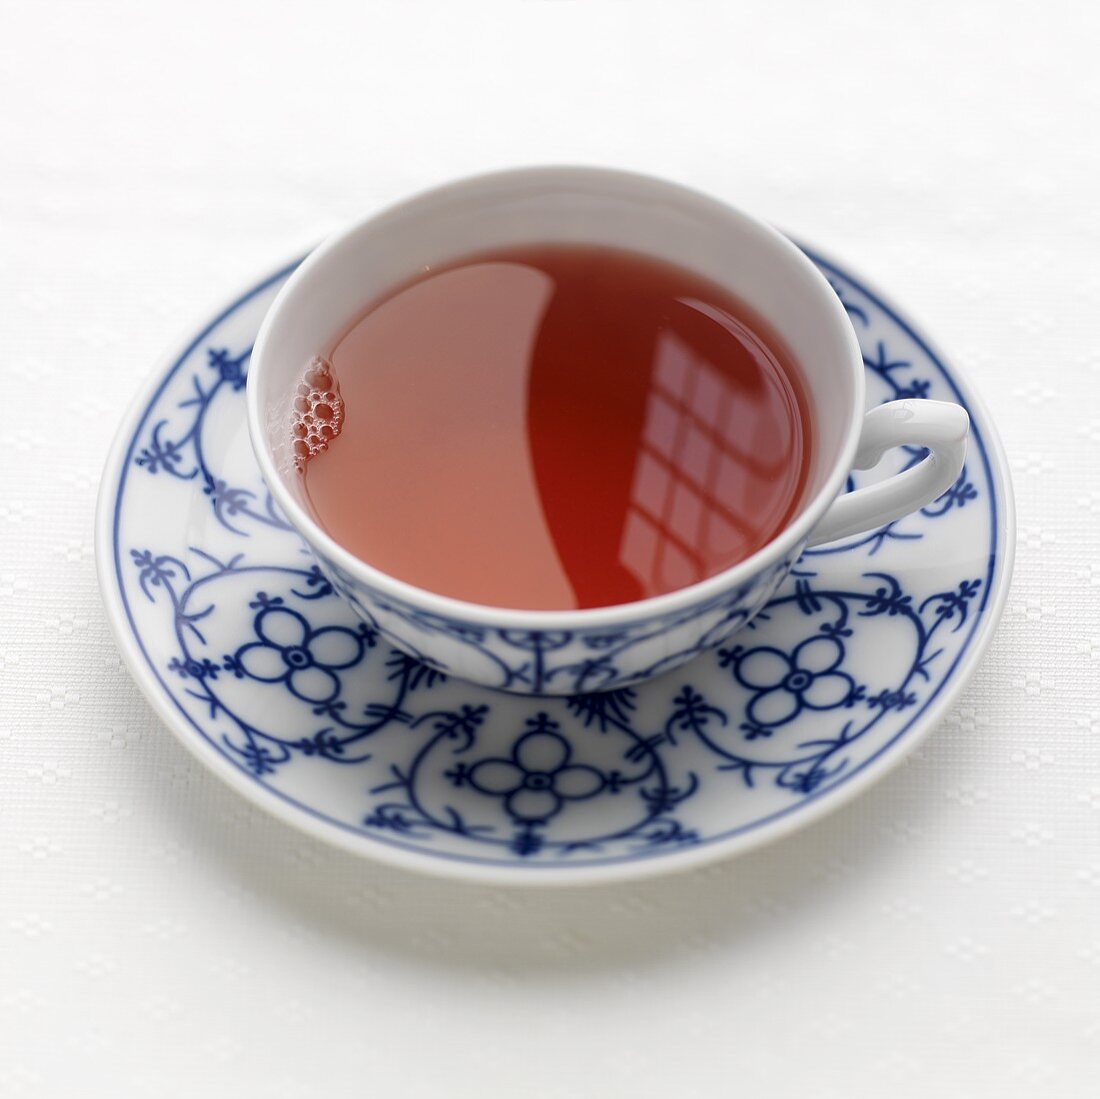 A cup of fruit tea